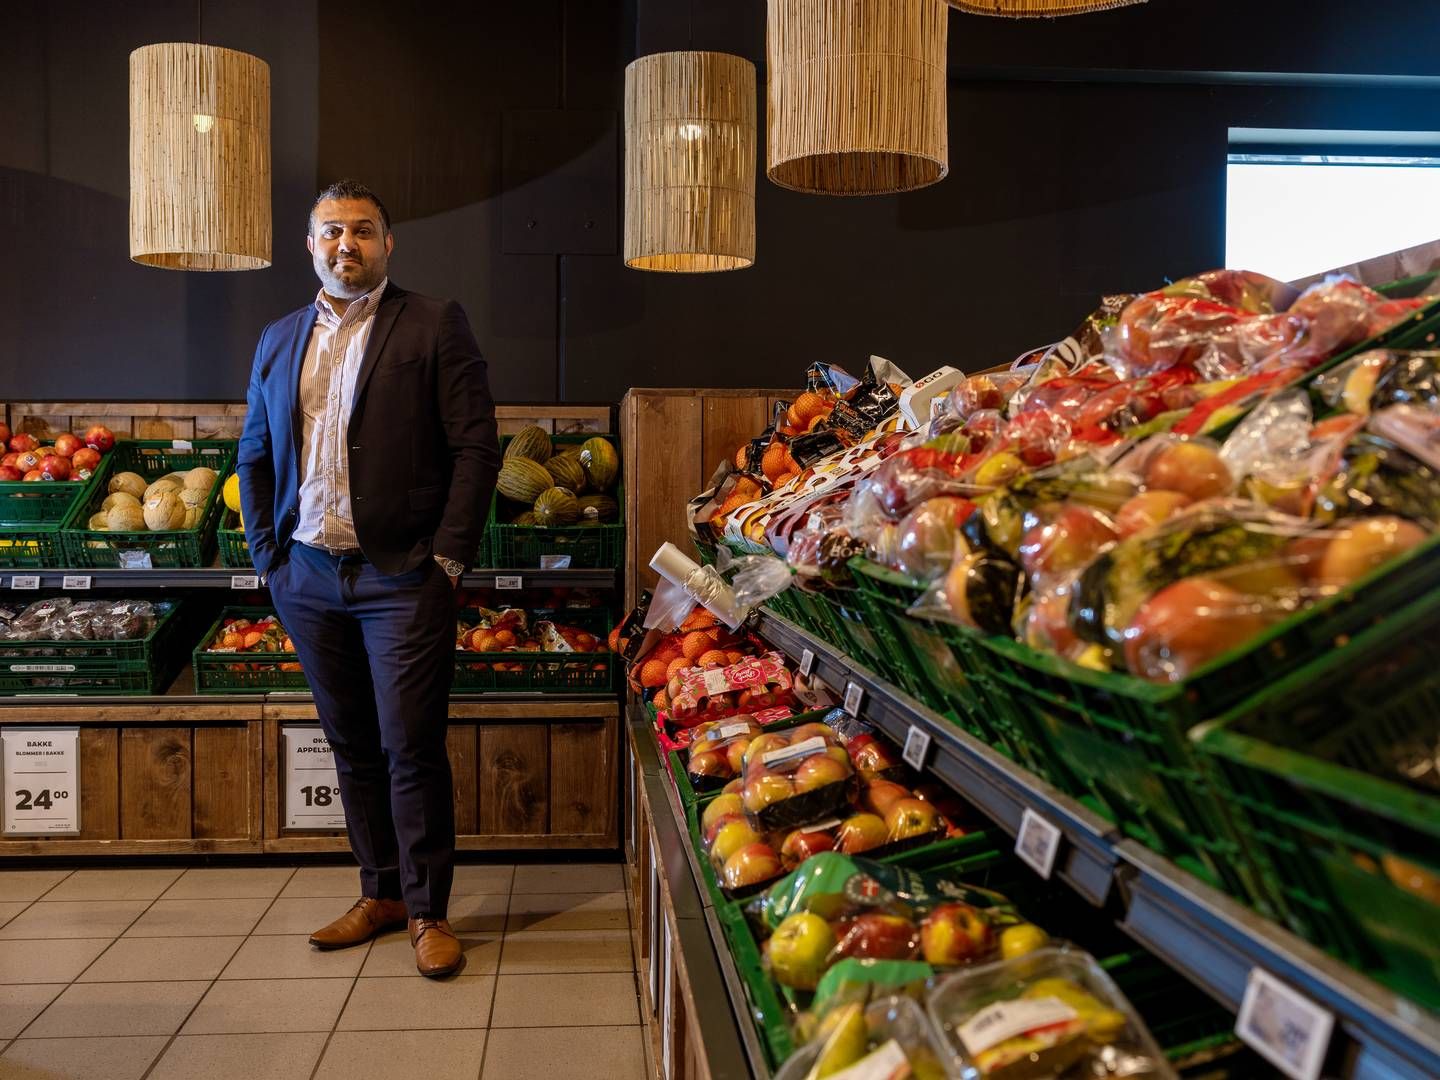 Braw Bakir sender ligeledes en opfordring afsted til leverandørerne om at ”bidrage til, at danskerne kan få endnu billigere dagligvarer.” | Foto: Stine Schjøtler